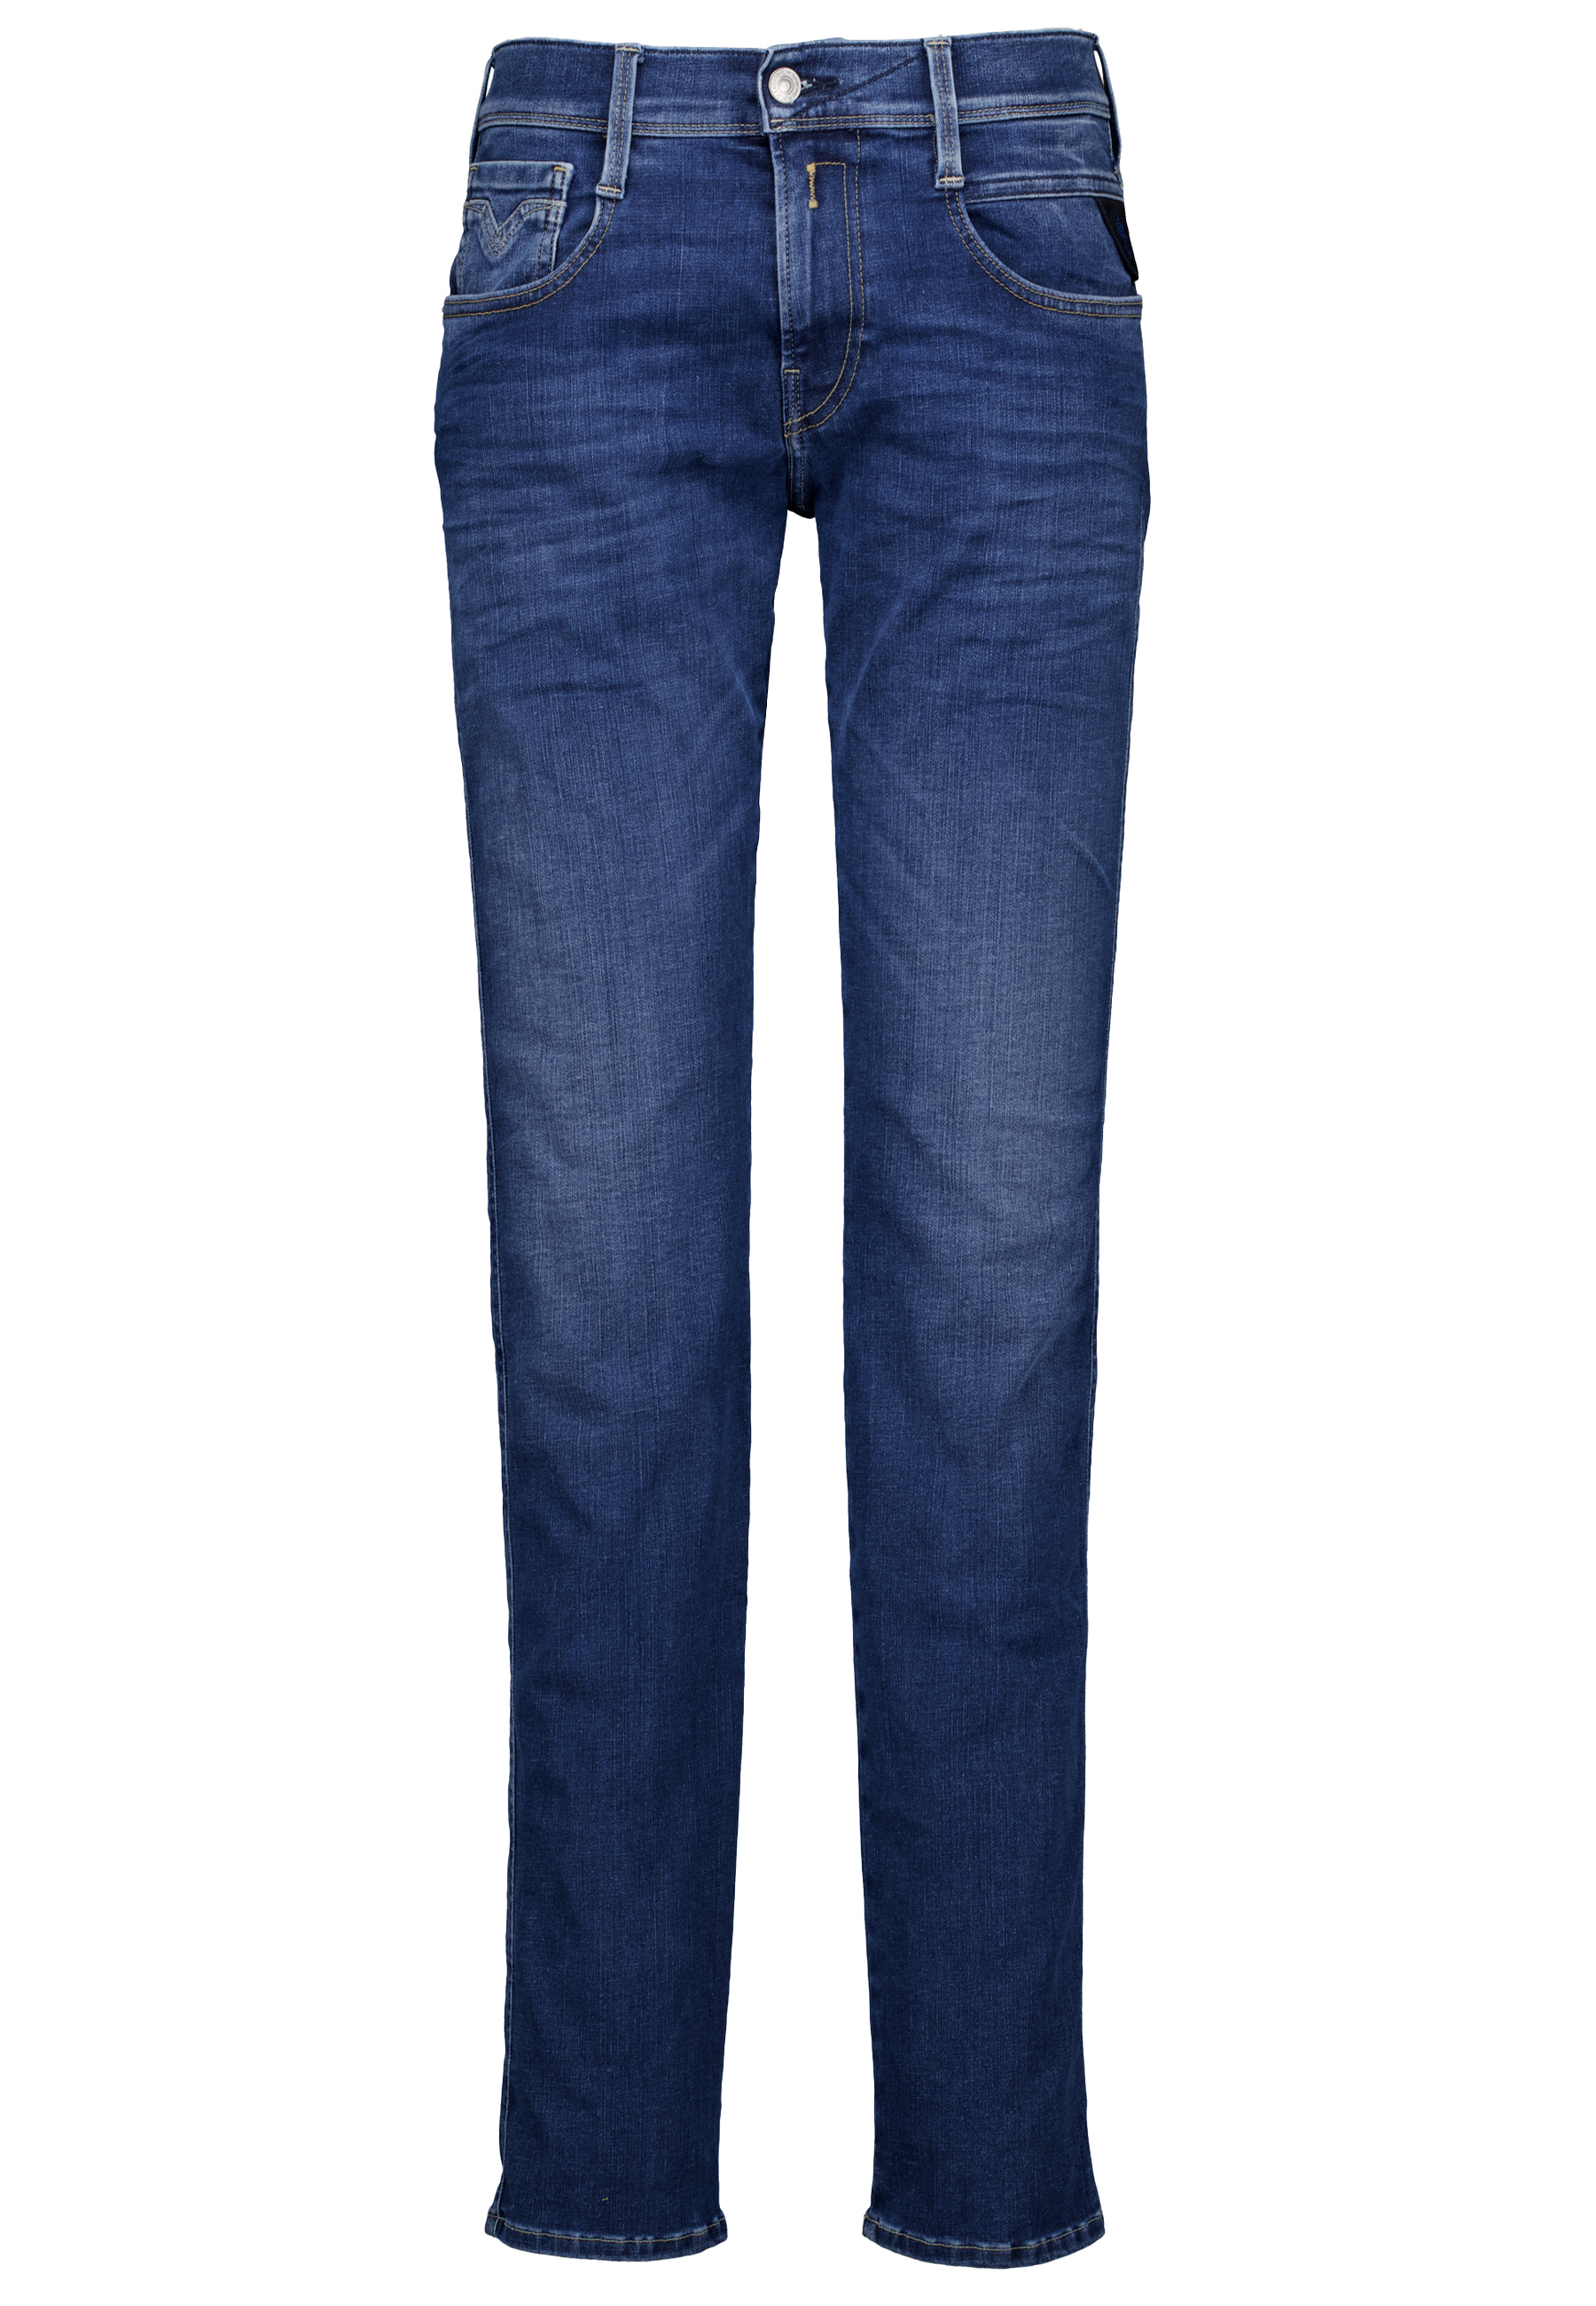 Replay jeans blauw Heren maat 34/34